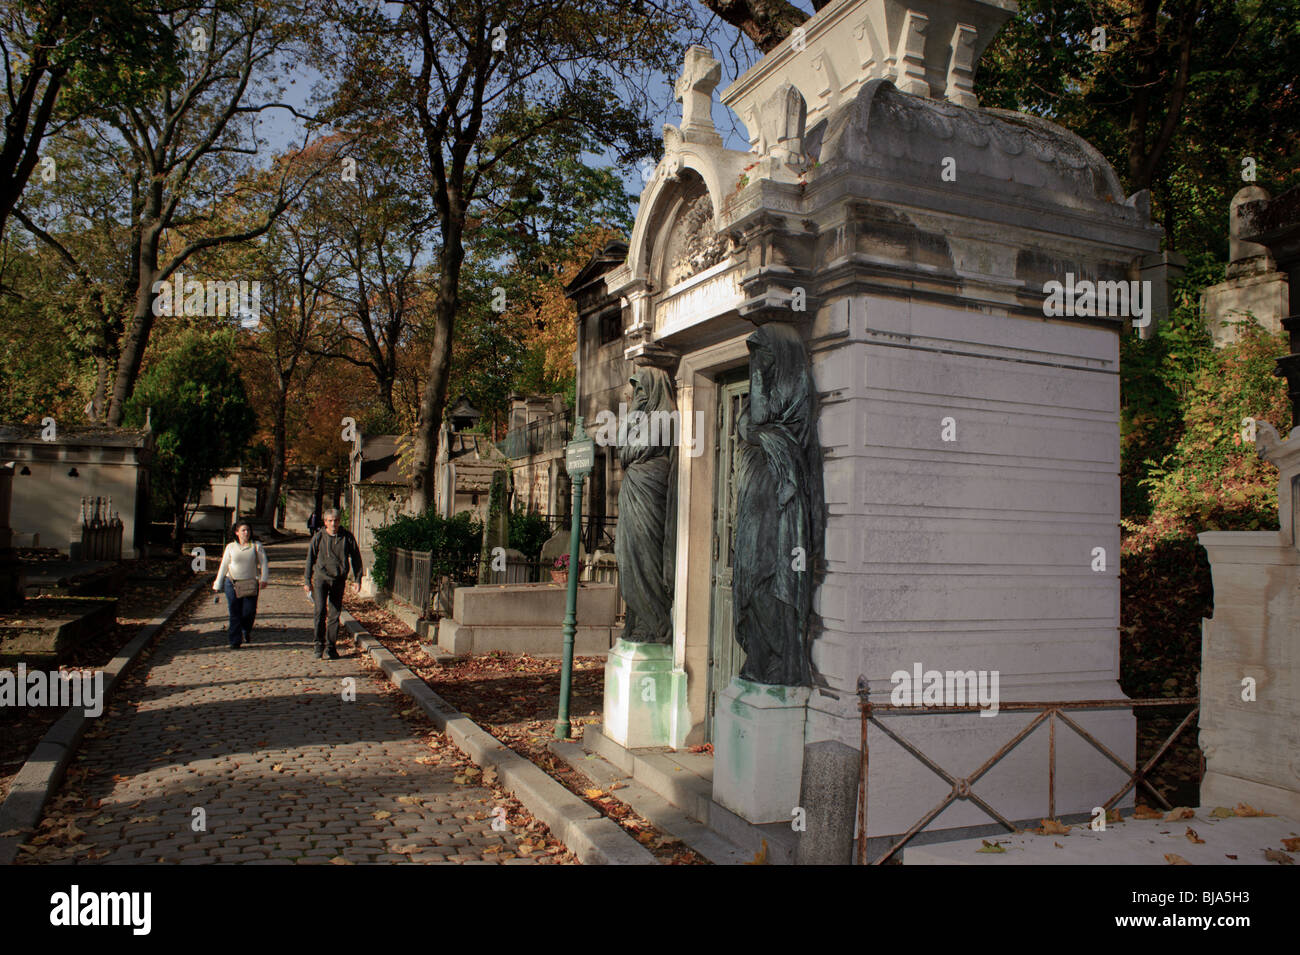 Paris, France - Personnes Promenading en parc urbain, le cimetière du Père-Lachaise, Monument, Rue, jardins urbains Banque D'Images